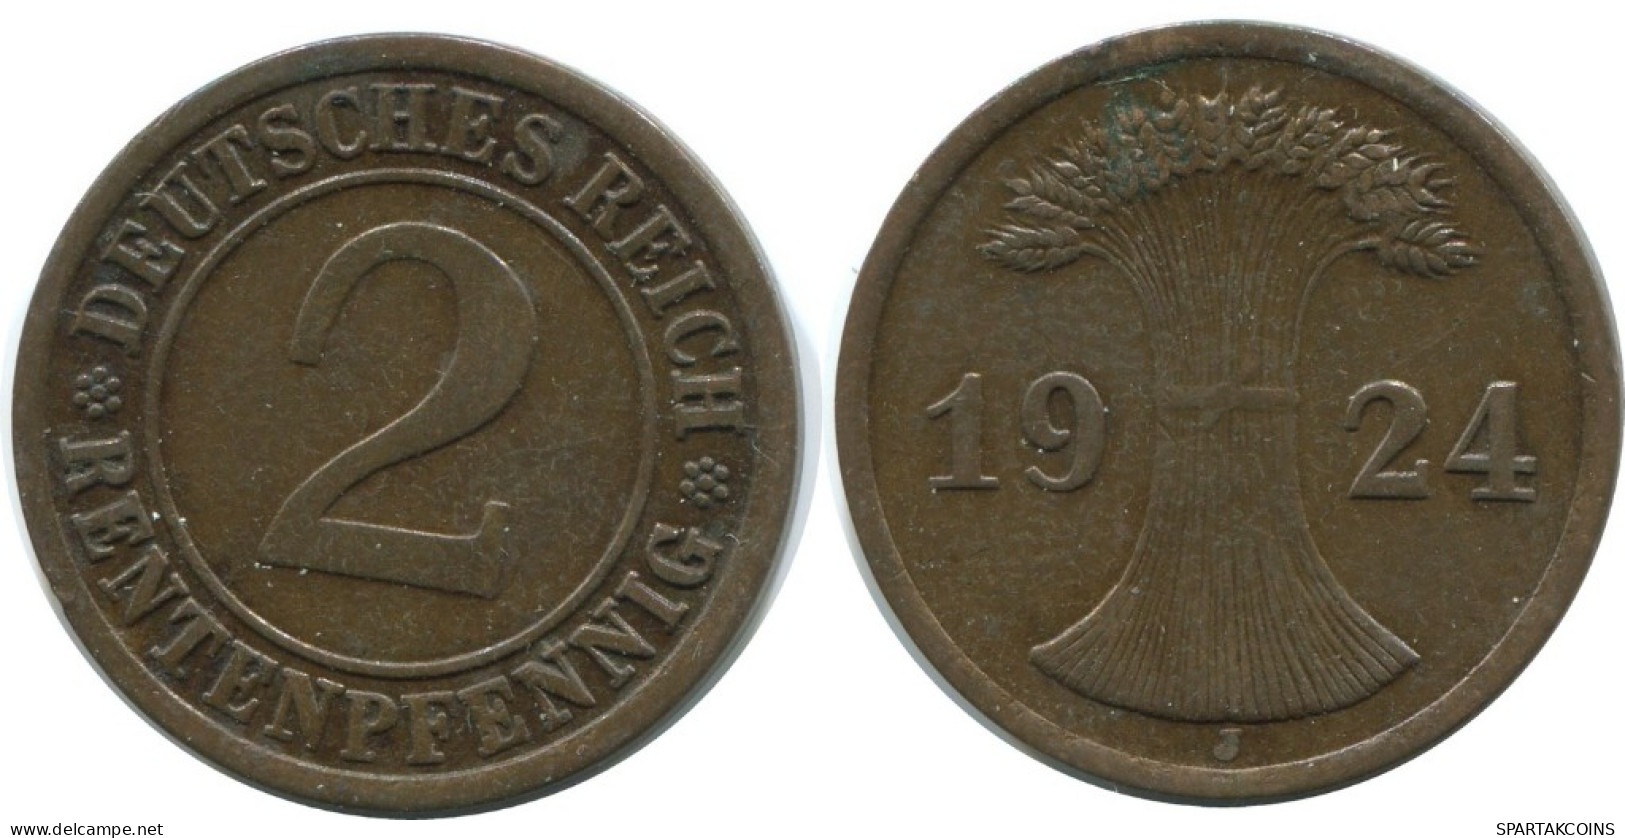 2 RENTENPFENNIG 1924 J ALEMANIA Moneda GERMANY #AE286.E.A - 2 Rentenpfennig & 2 Reichspfennig